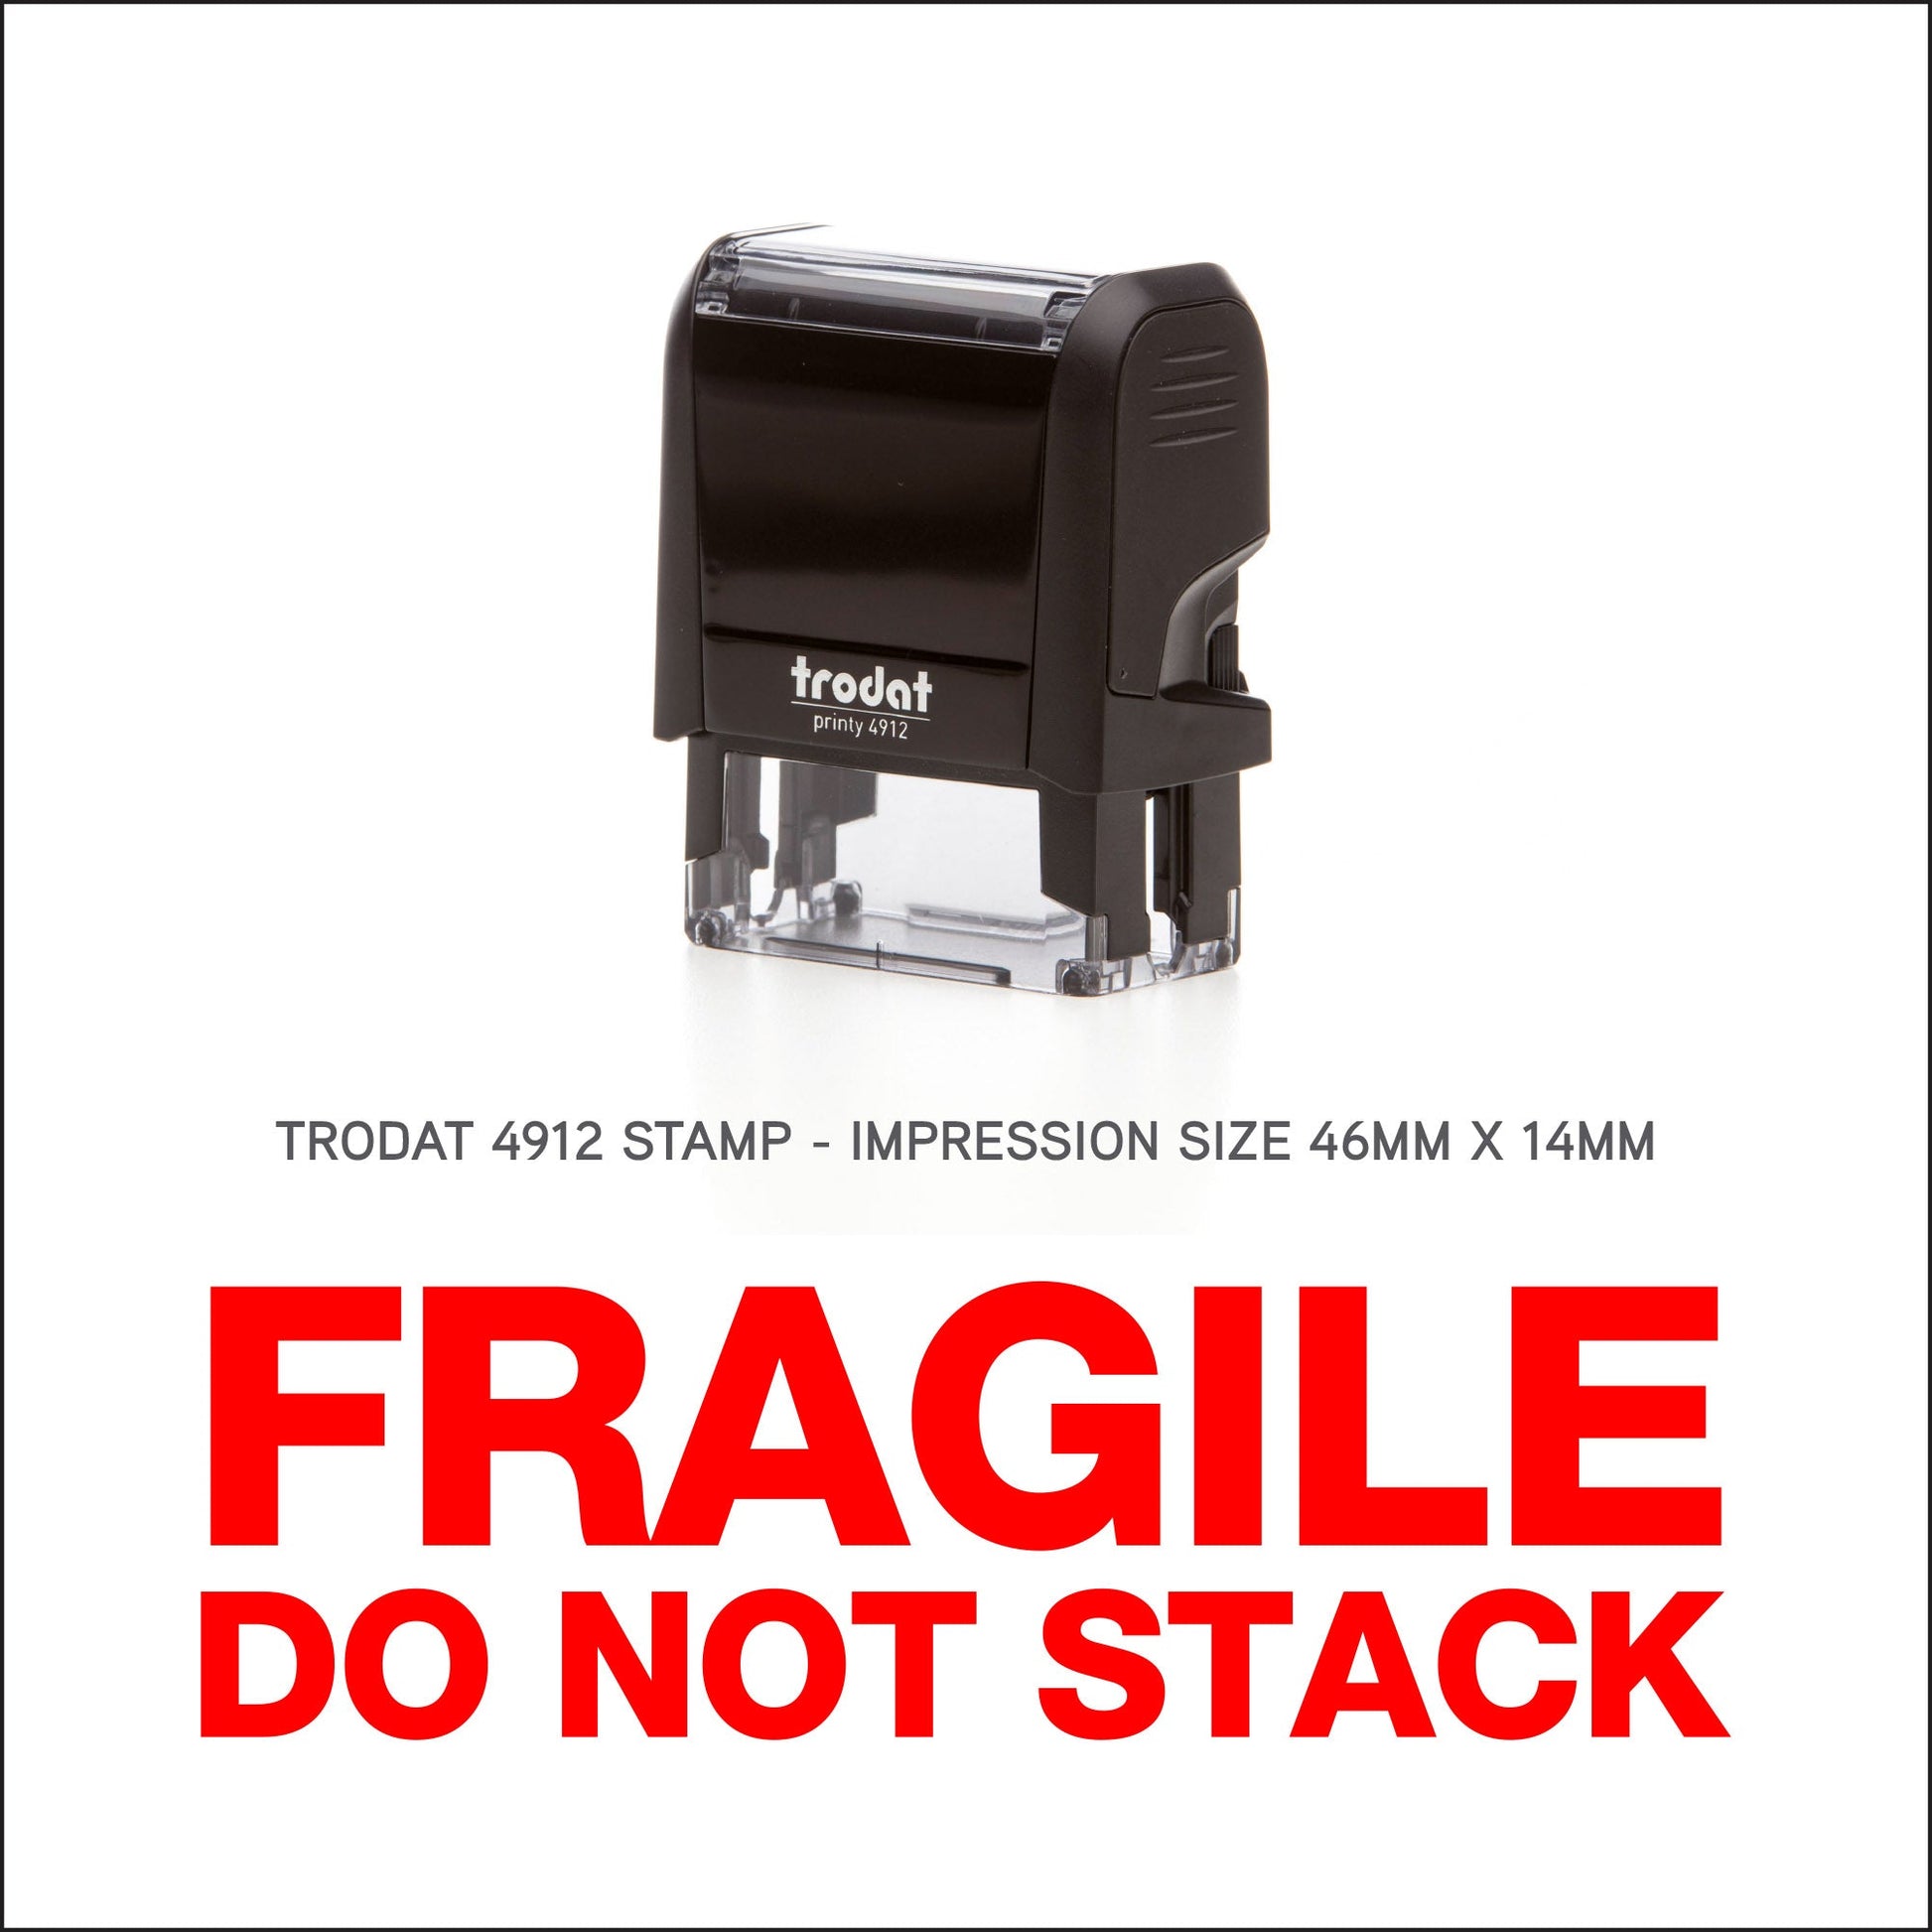 Fragile Do Not Stack Rubber Stamp - Trodat 4912 - 45mm x 18mm Impression